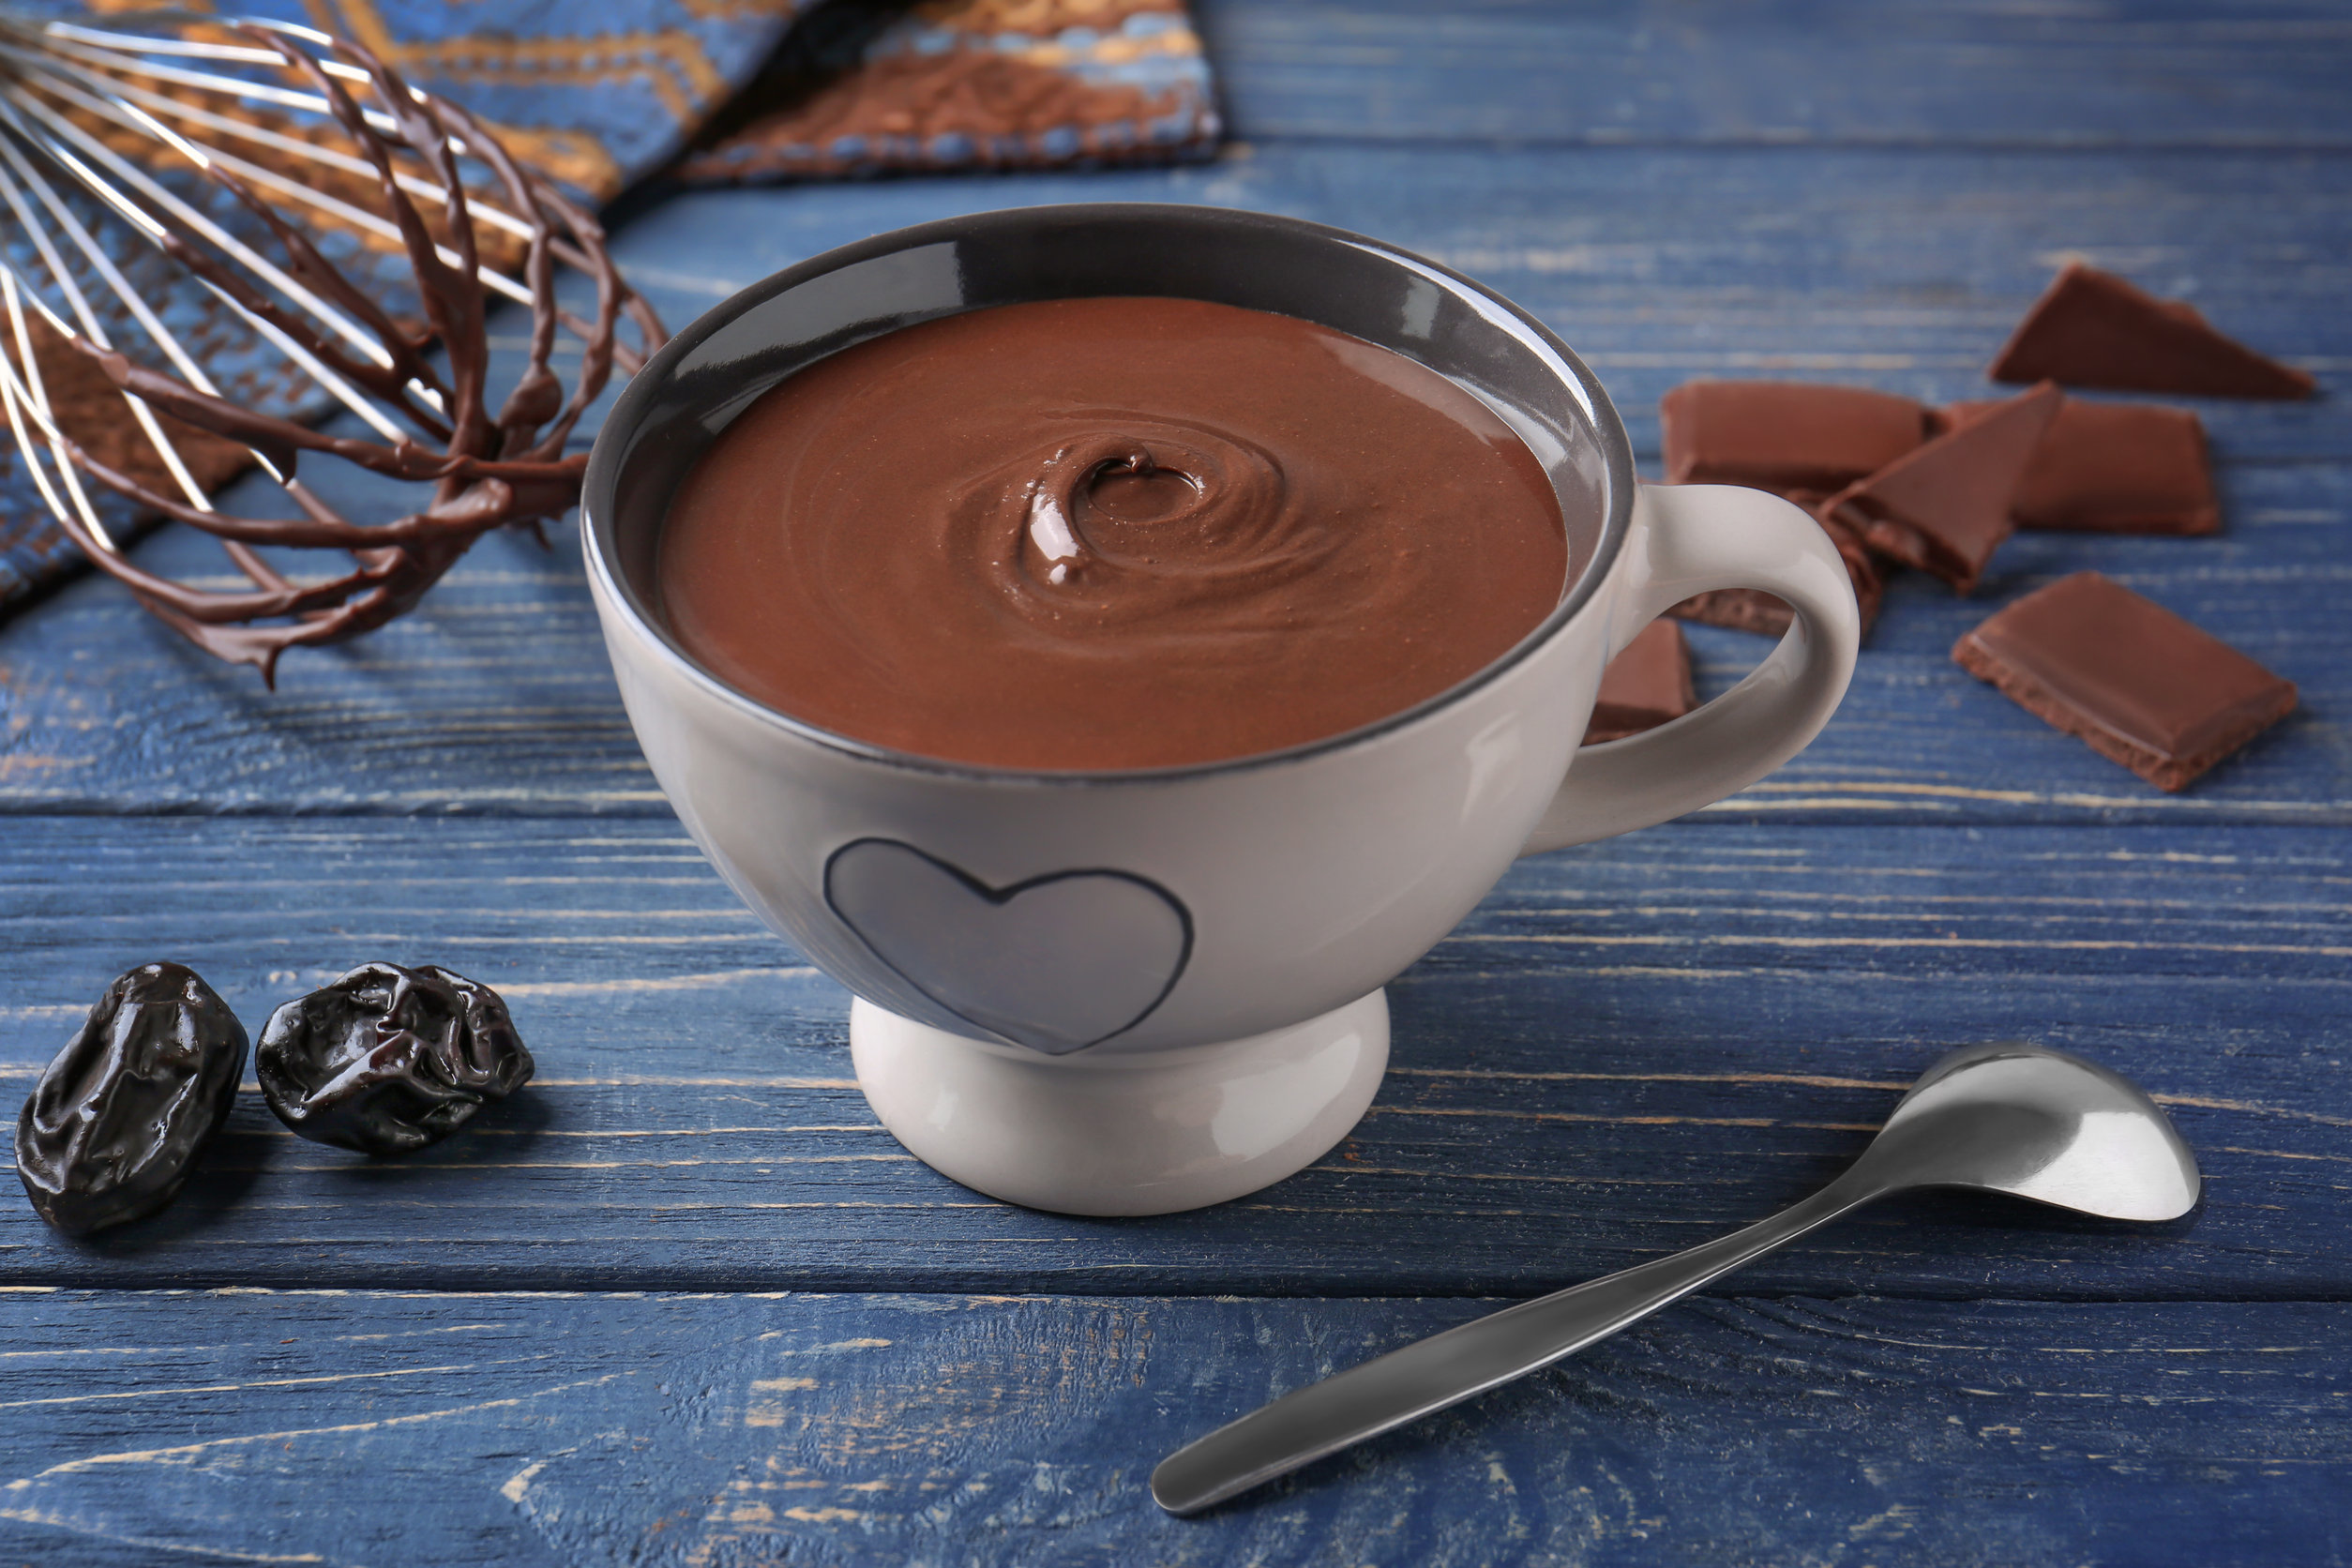 Šokoladas – vienas dažniausiai naudojamų ingredientų įvairiems konditeriniams gaminiams, pagamintas iš fermentuotų skrudintų maltų kakavos pupelių.123rf nuotr.